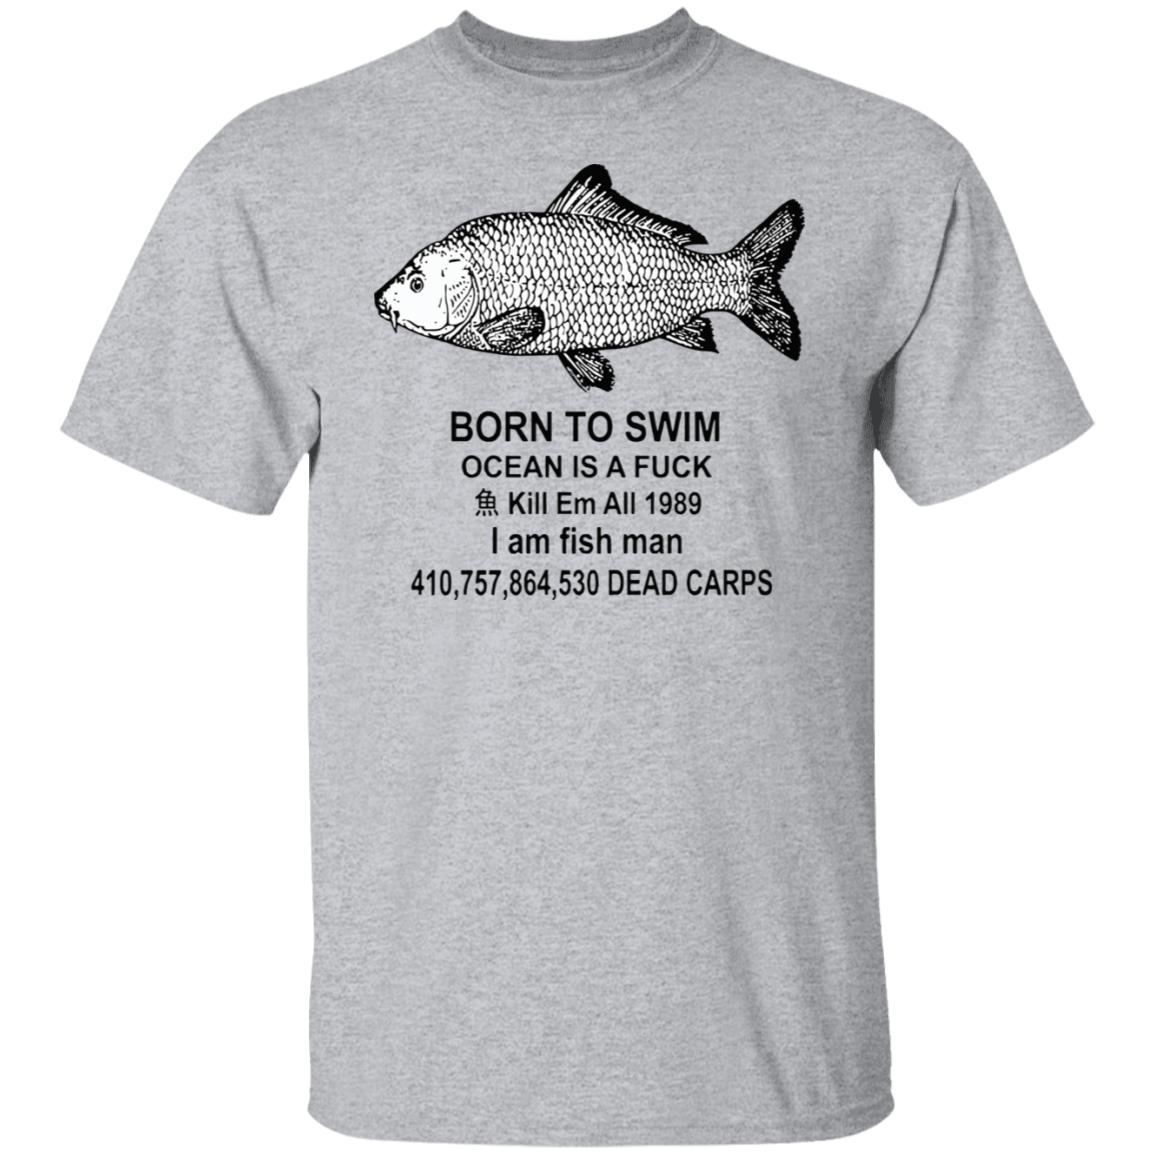 Born to swim ocean is a f*ck kill em all i am fish man shirt